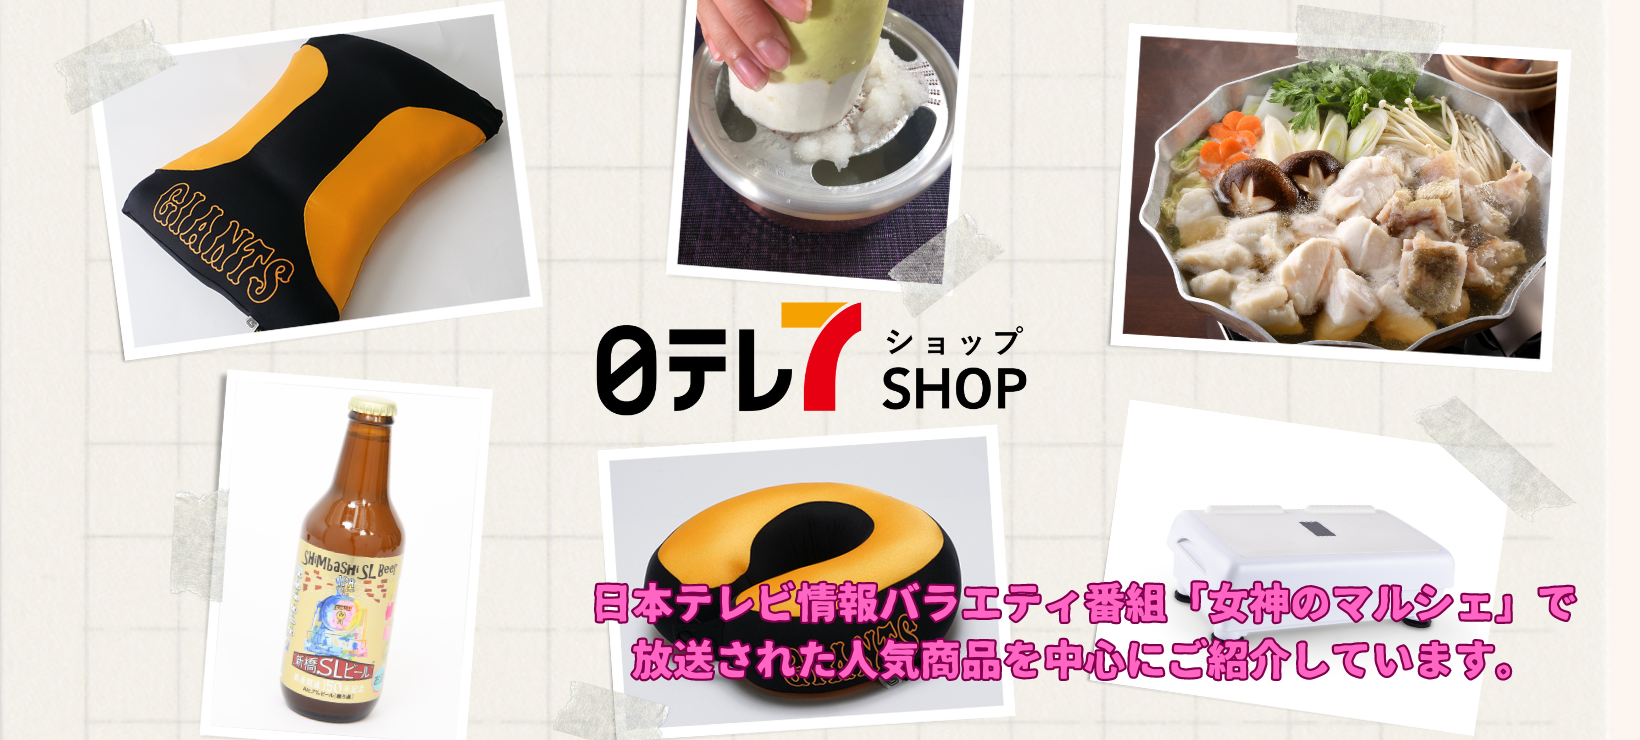 日テレ7 SHOP ANA Mall店